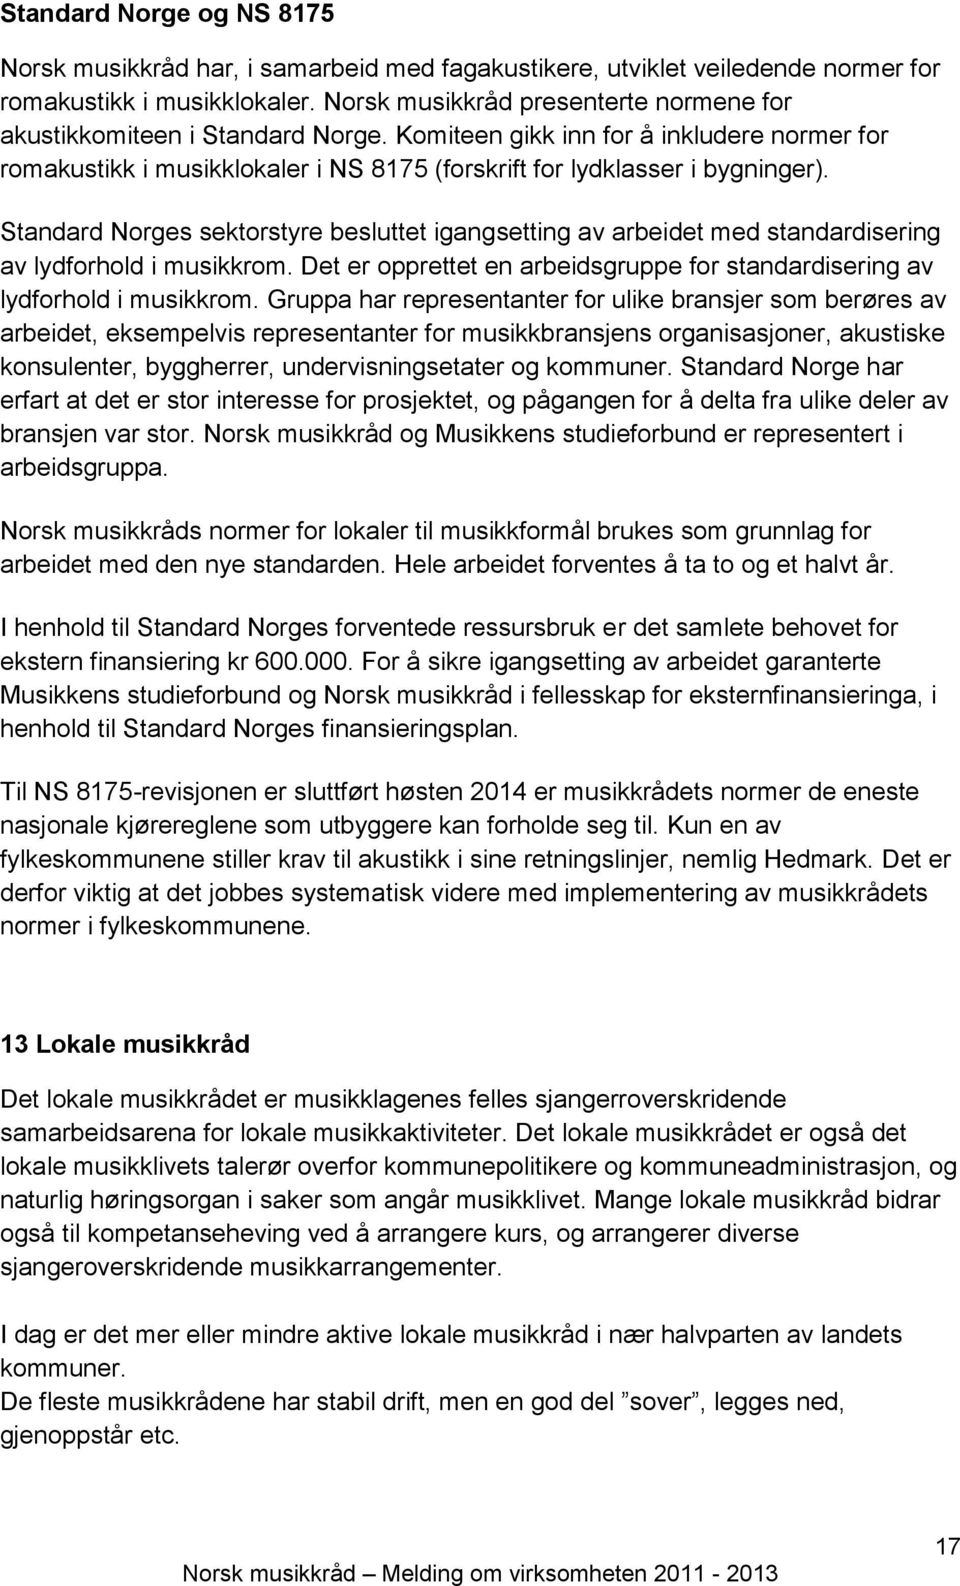 Standard Norges sektorstyre besluttet igangsetting av arbeidet med standardisering av lydforhold i musikkrom. Det er opprettet en arbeidsgruppe for standardisering av lydforhold i musikkrom.